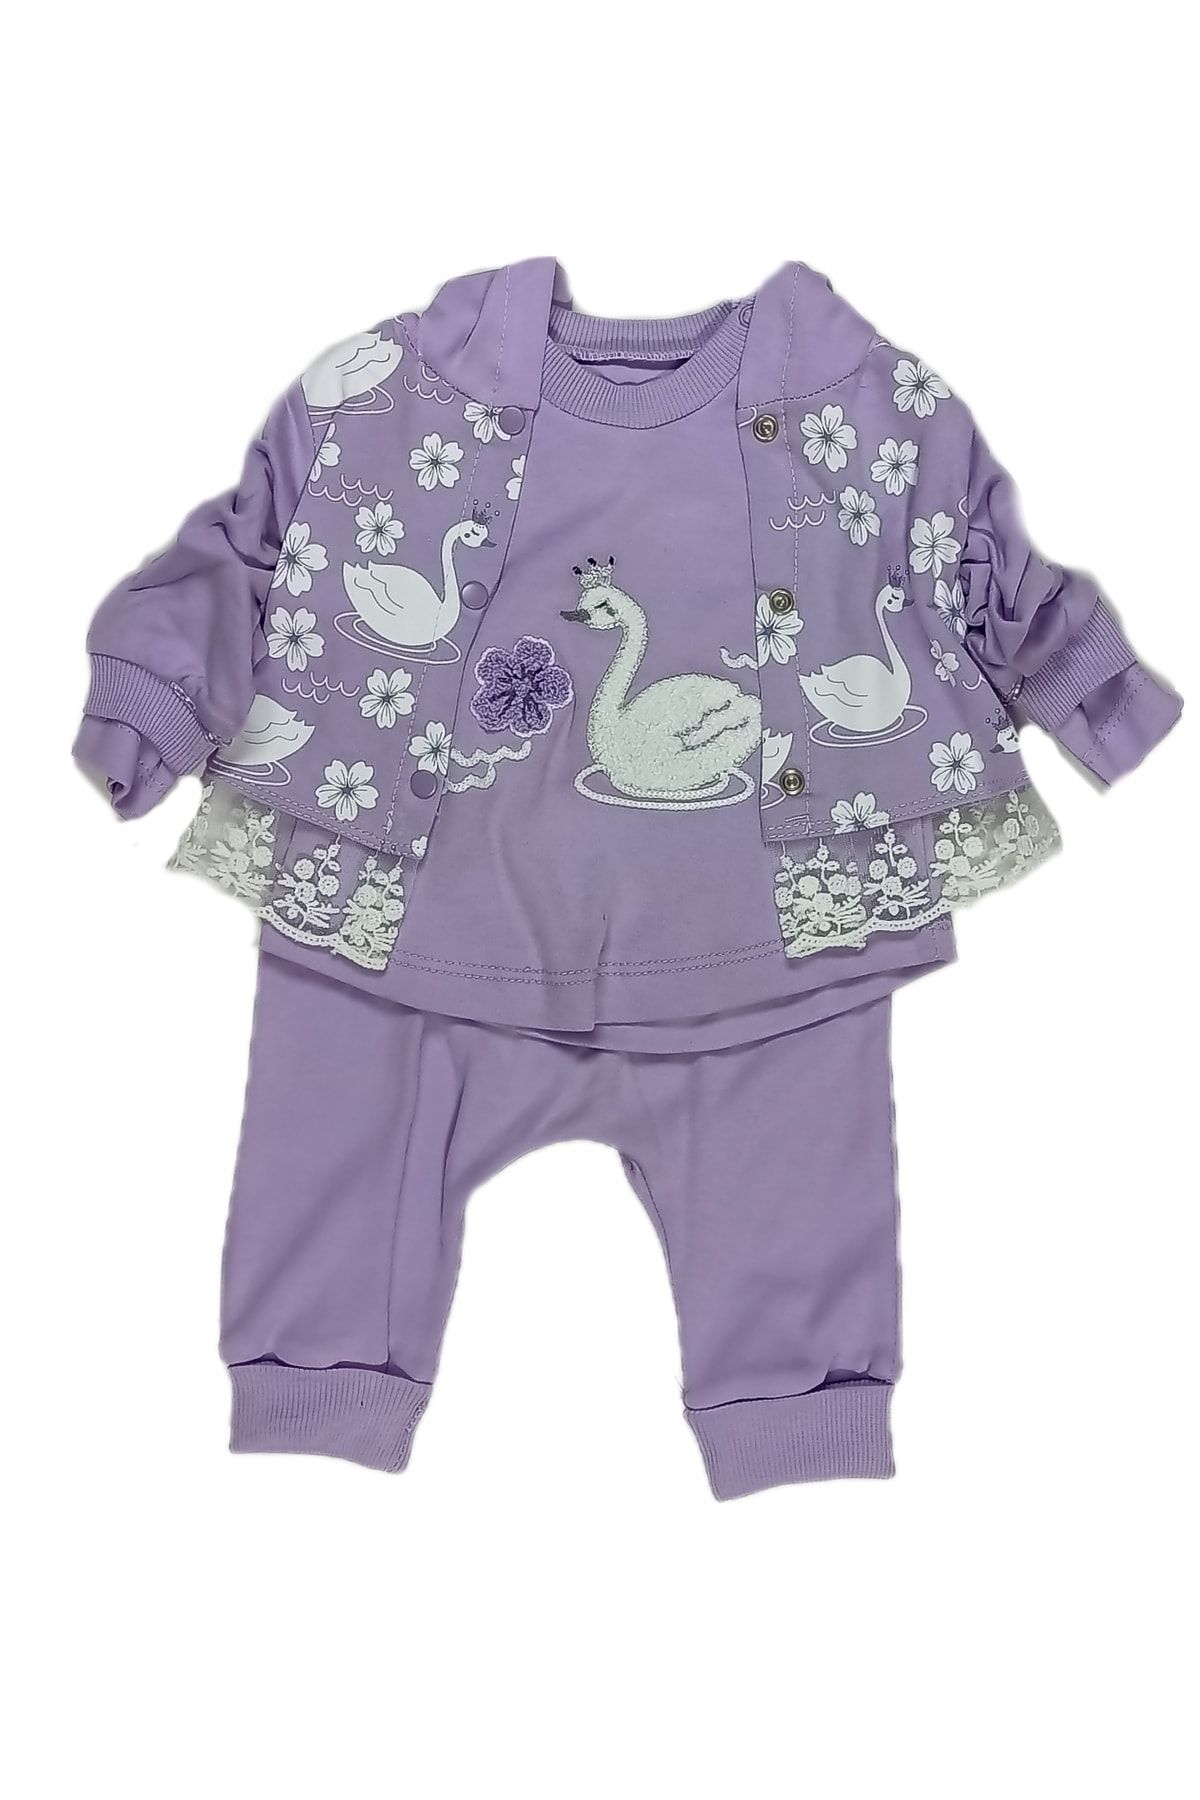 Uranüs Baby Kız Bebek Hırkalı Kıyafet Takımı / Bebek Alt Üst Takım Kapüşonlu Bebek Takım / Bayramlık Bebek Takım